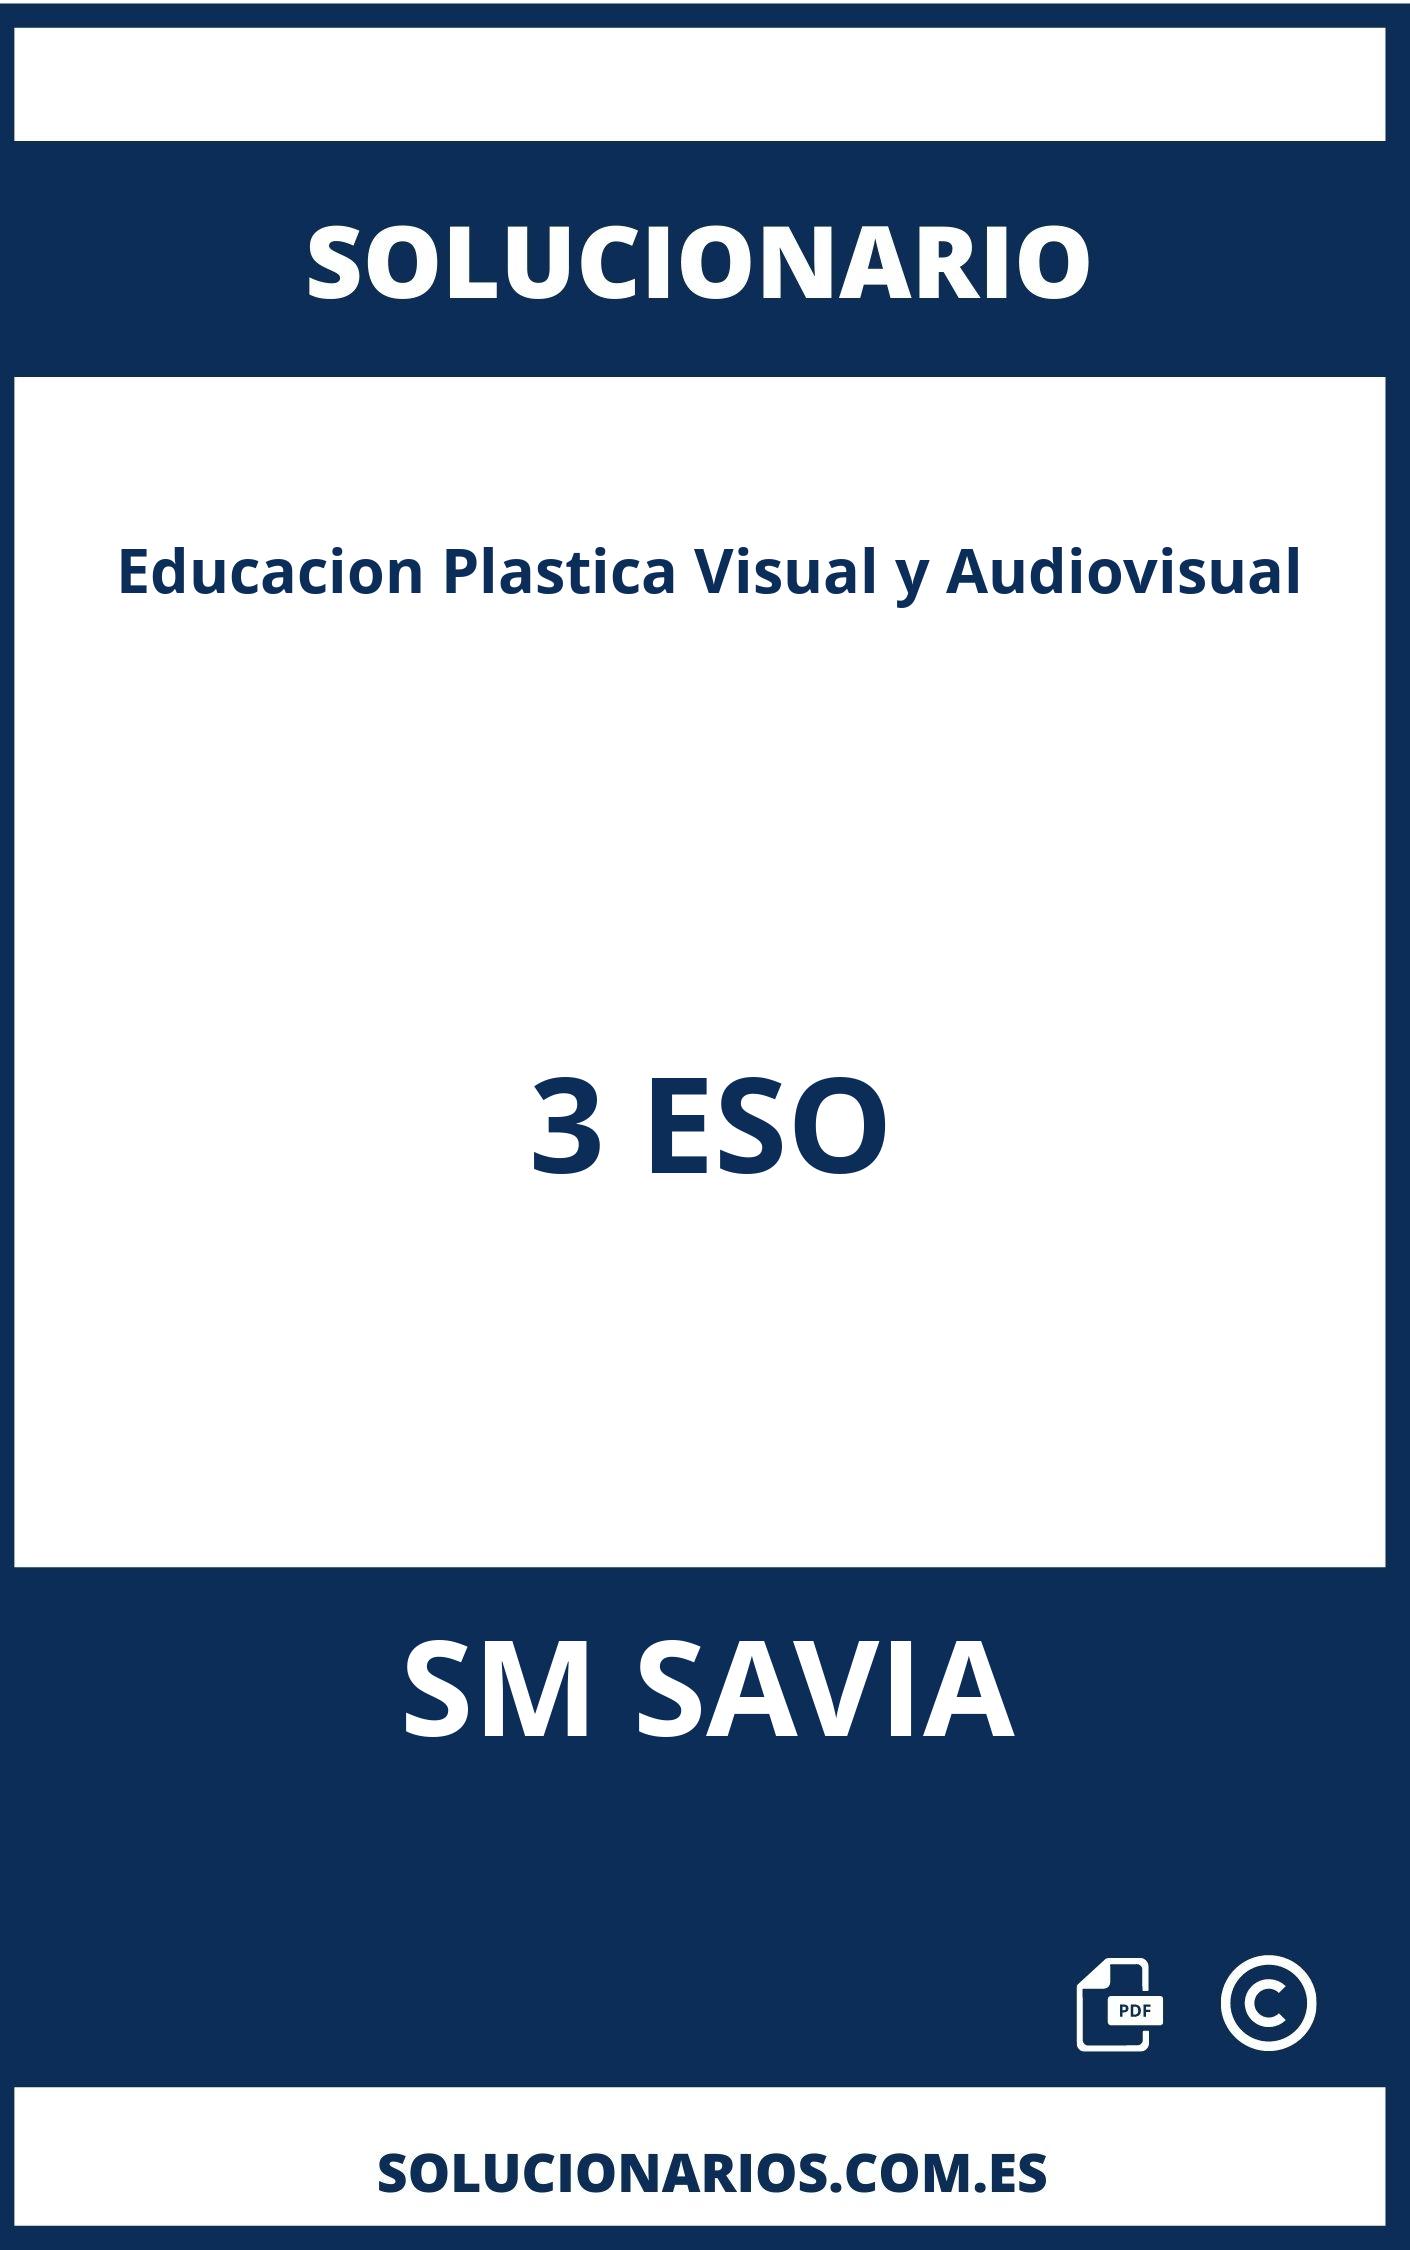 Solucionario Educacion Plastica Visual y Audiovisual 3 ESO SM SAVIA